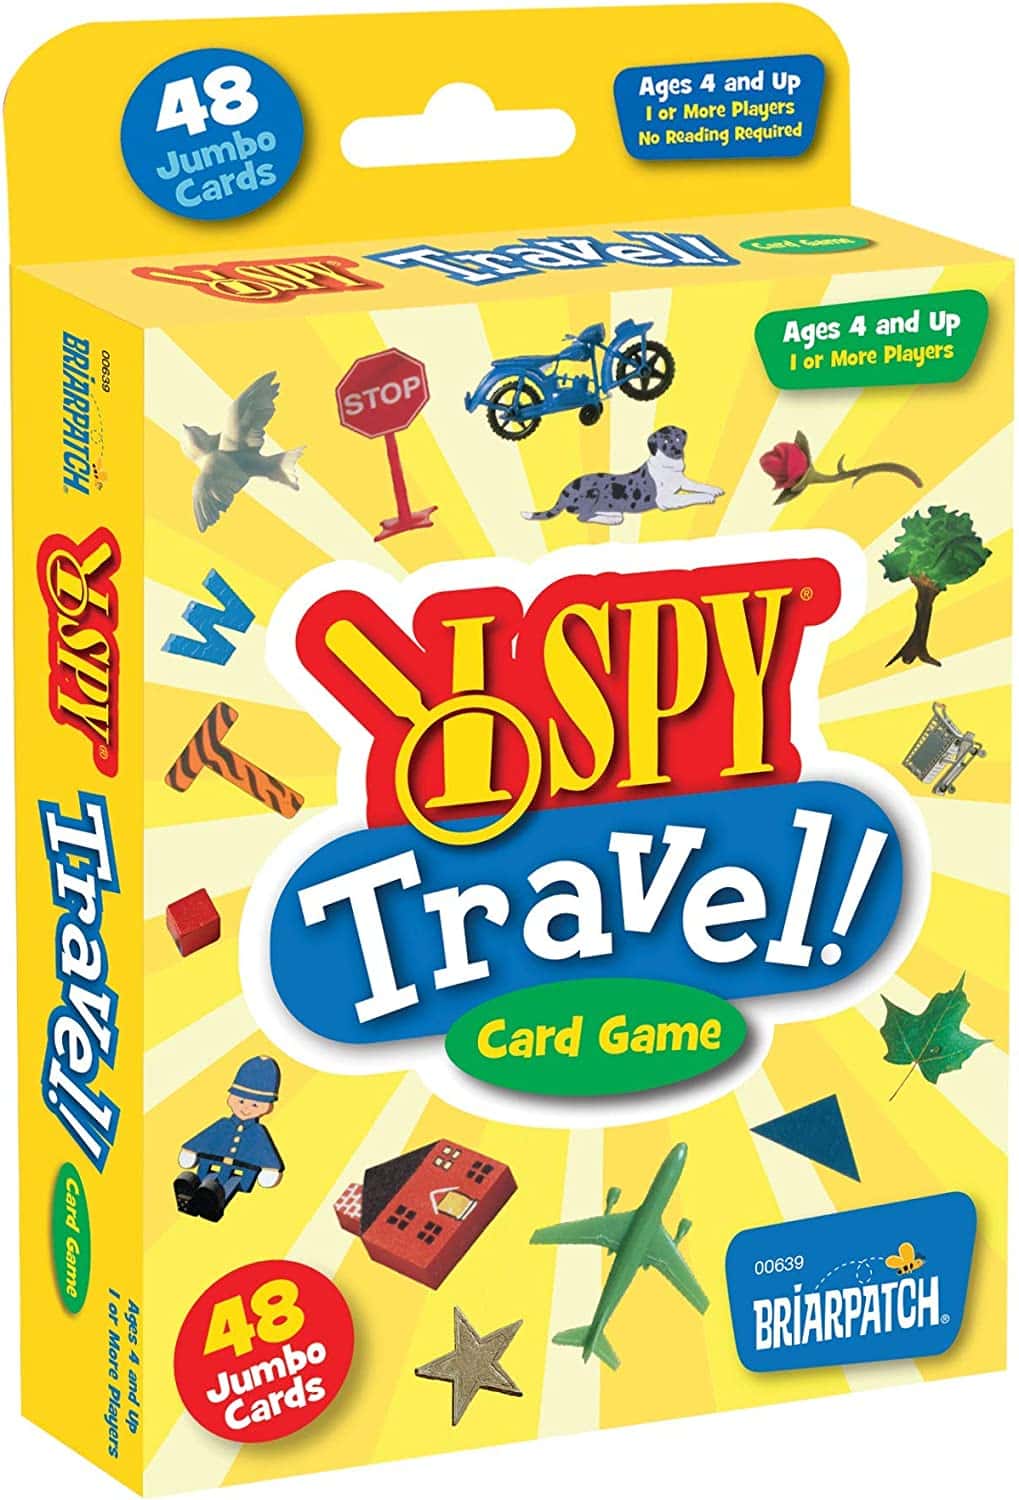 I Spy travel game